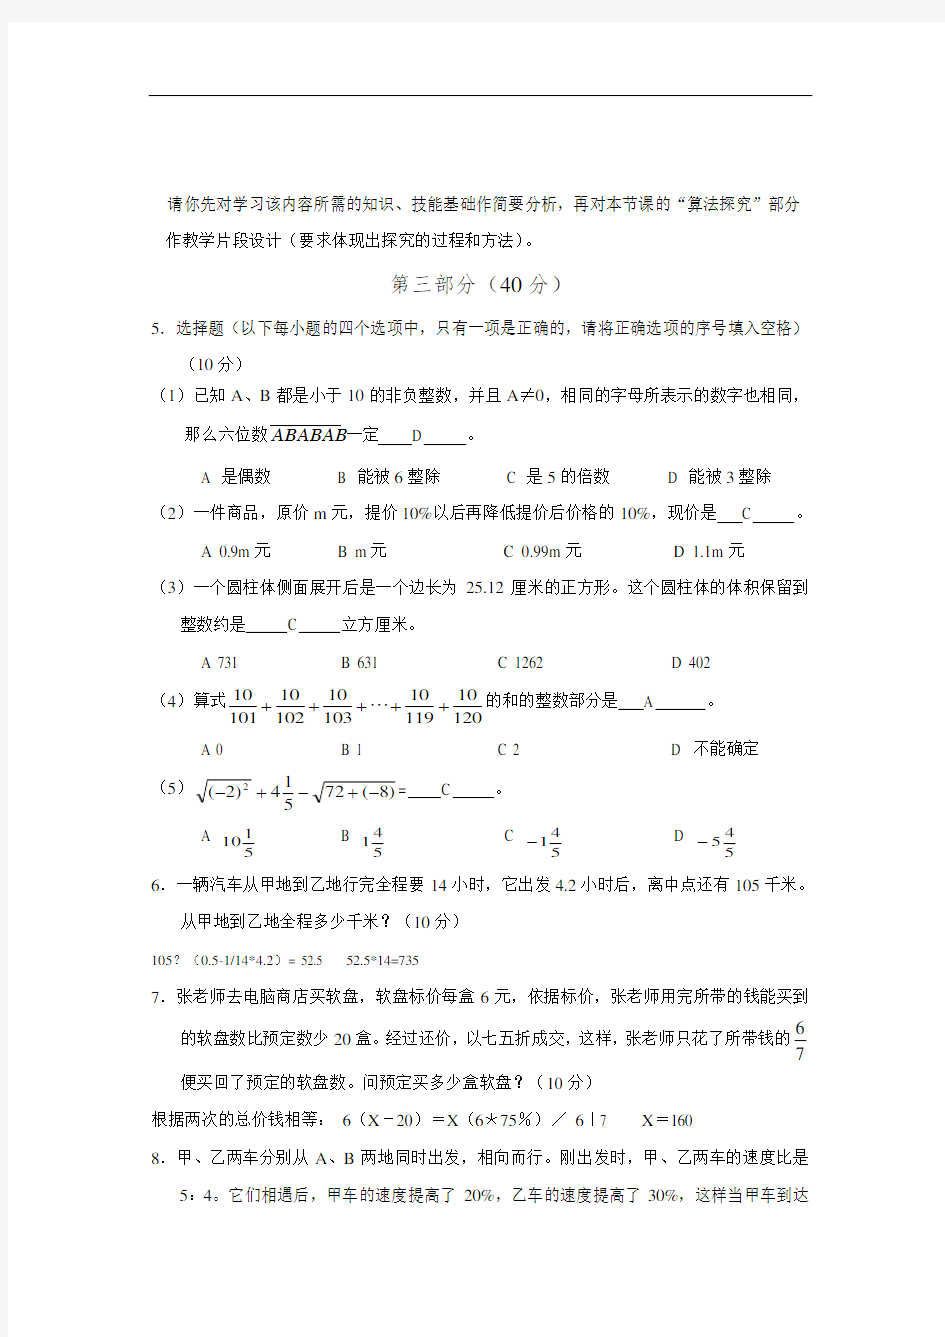 2018年杭州教师招聘考试真题_数学